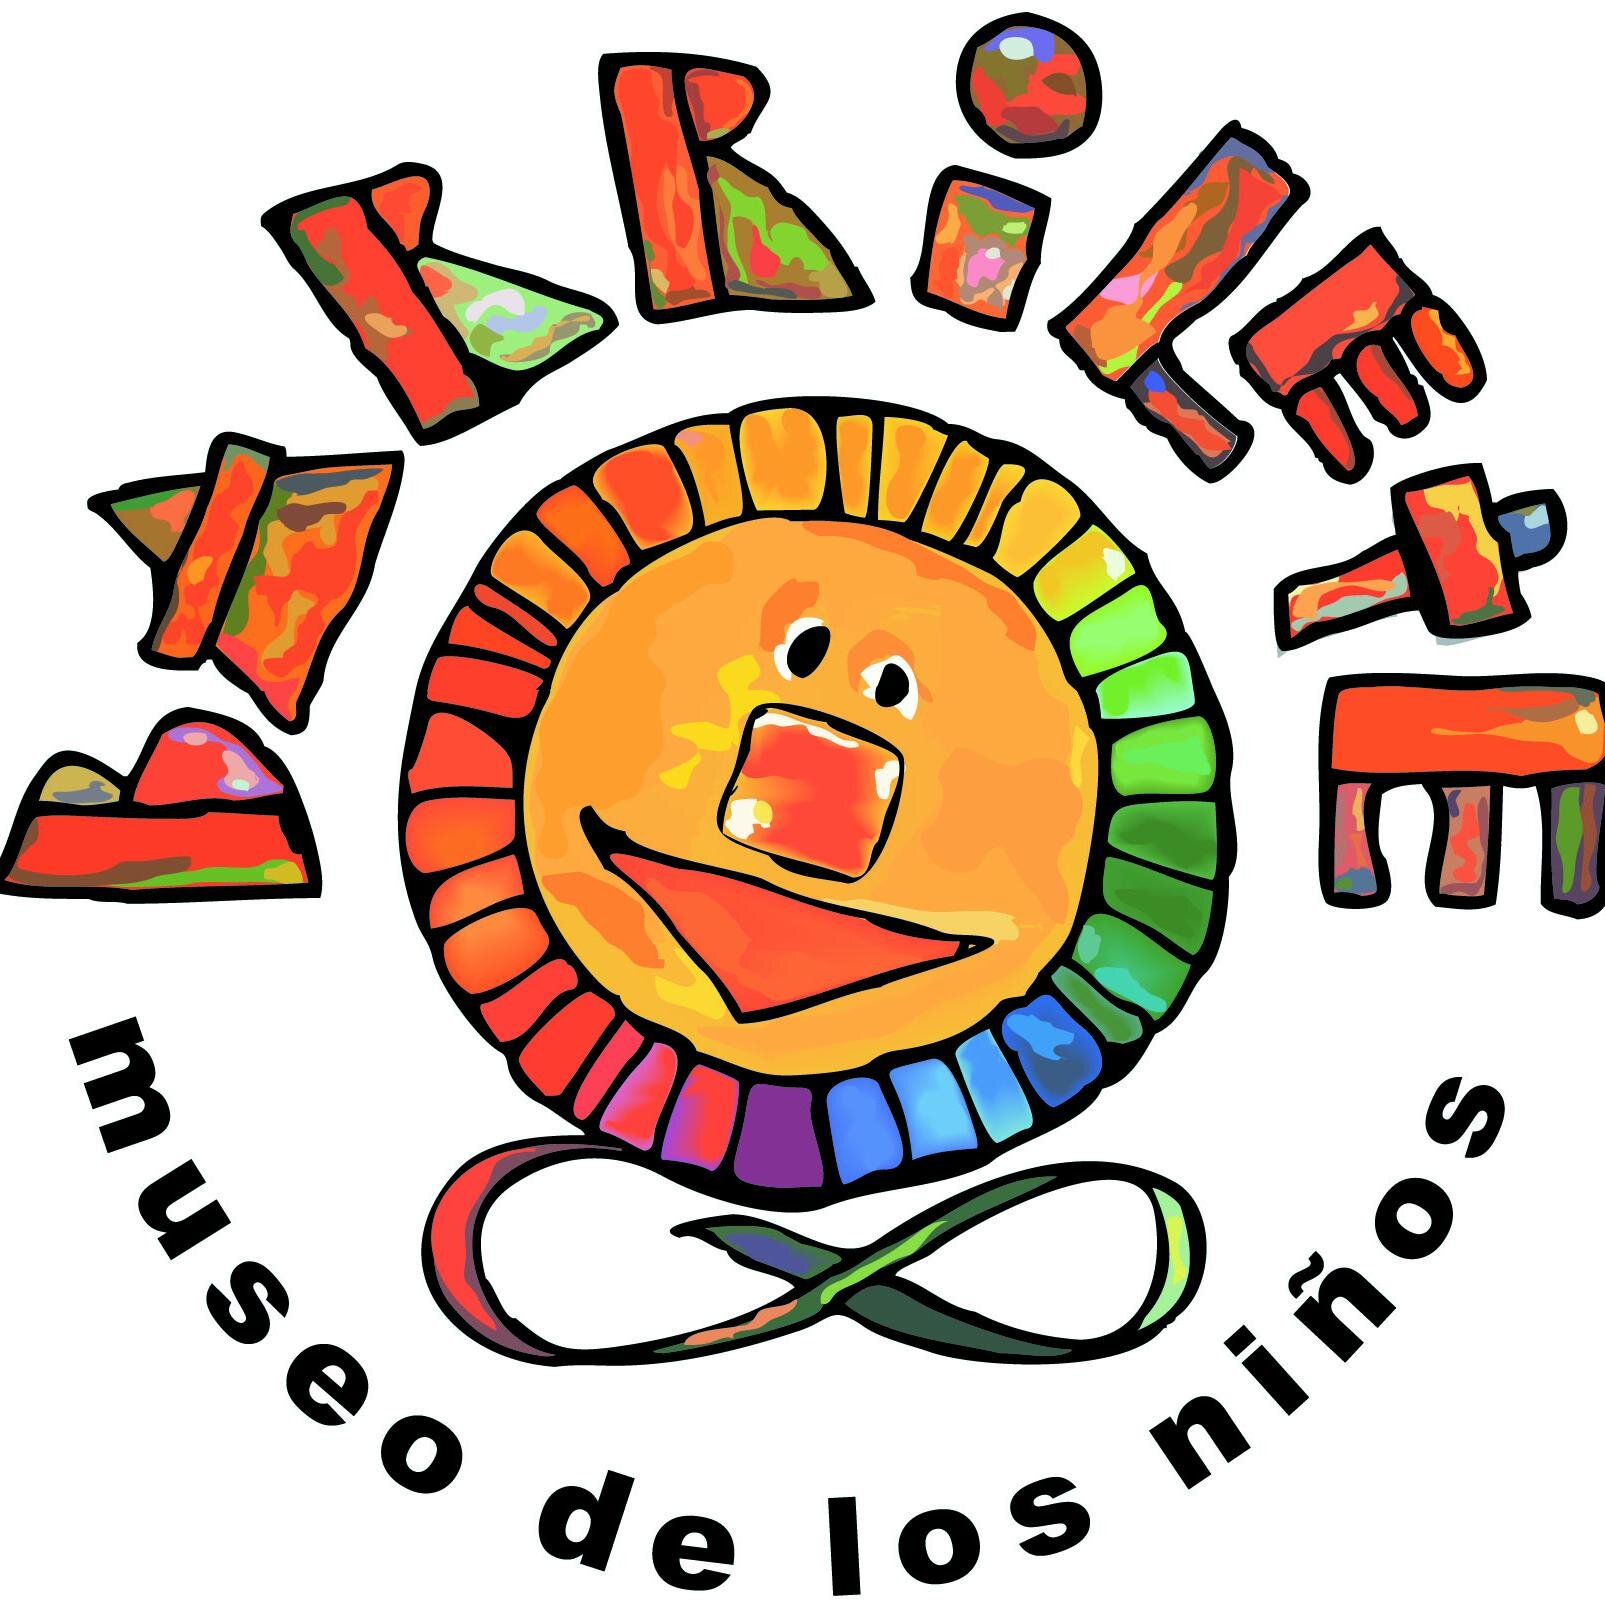 Museo para chicos y grandes con experiencias lúdico - pedagógicas. Recta Martinoli 7857, Argüello, Córdoba. Tel: (03543) 421027 - 447248